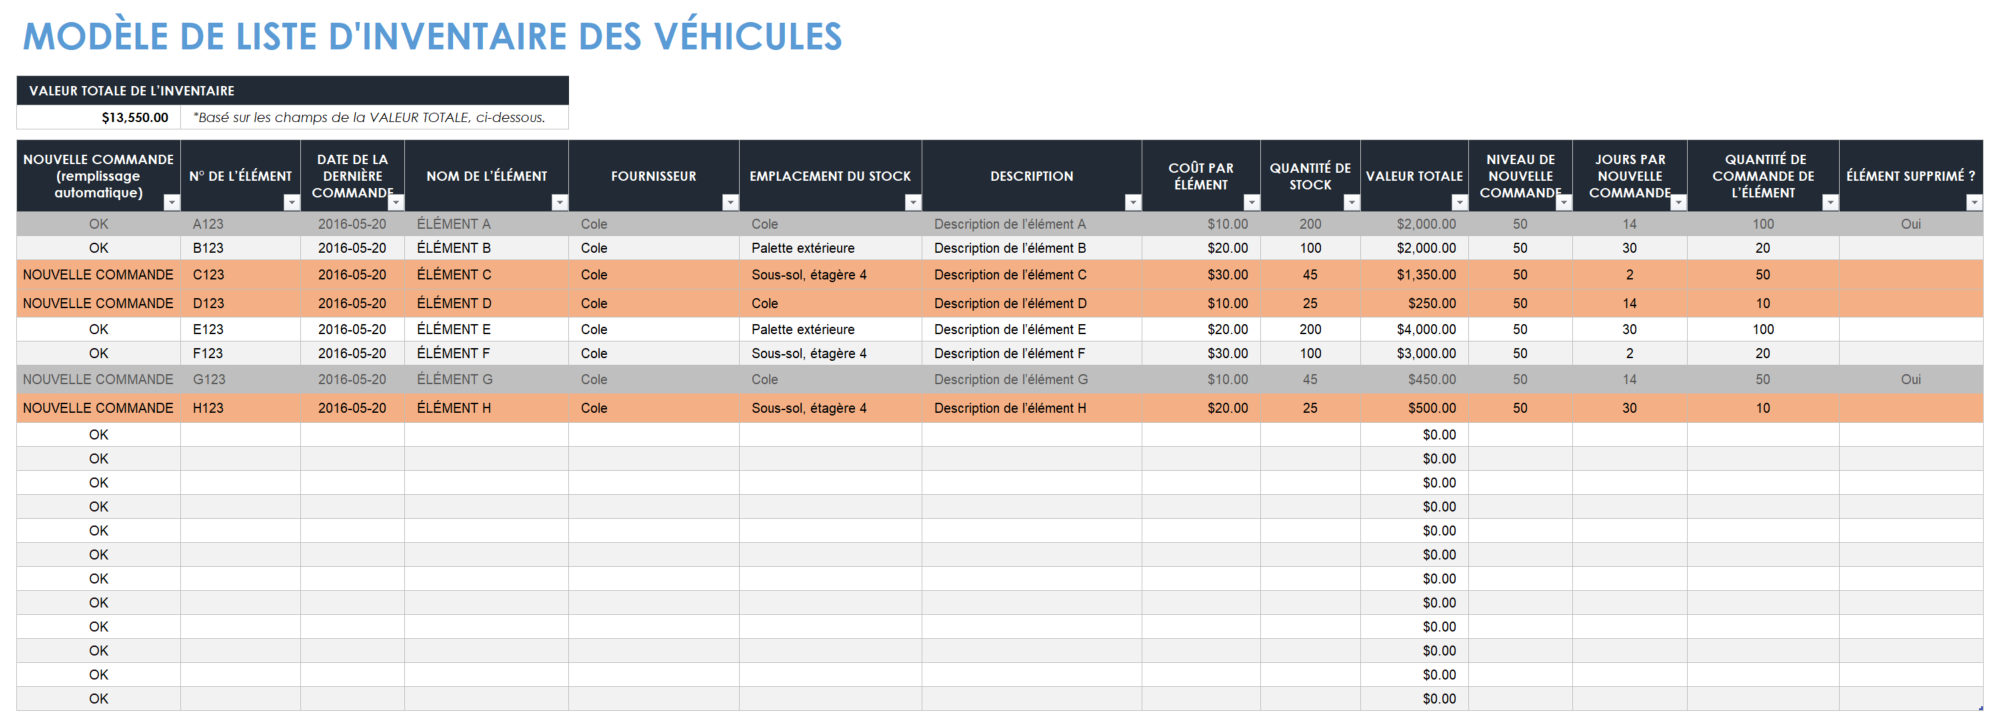 Liste d'inventaire des véhicules